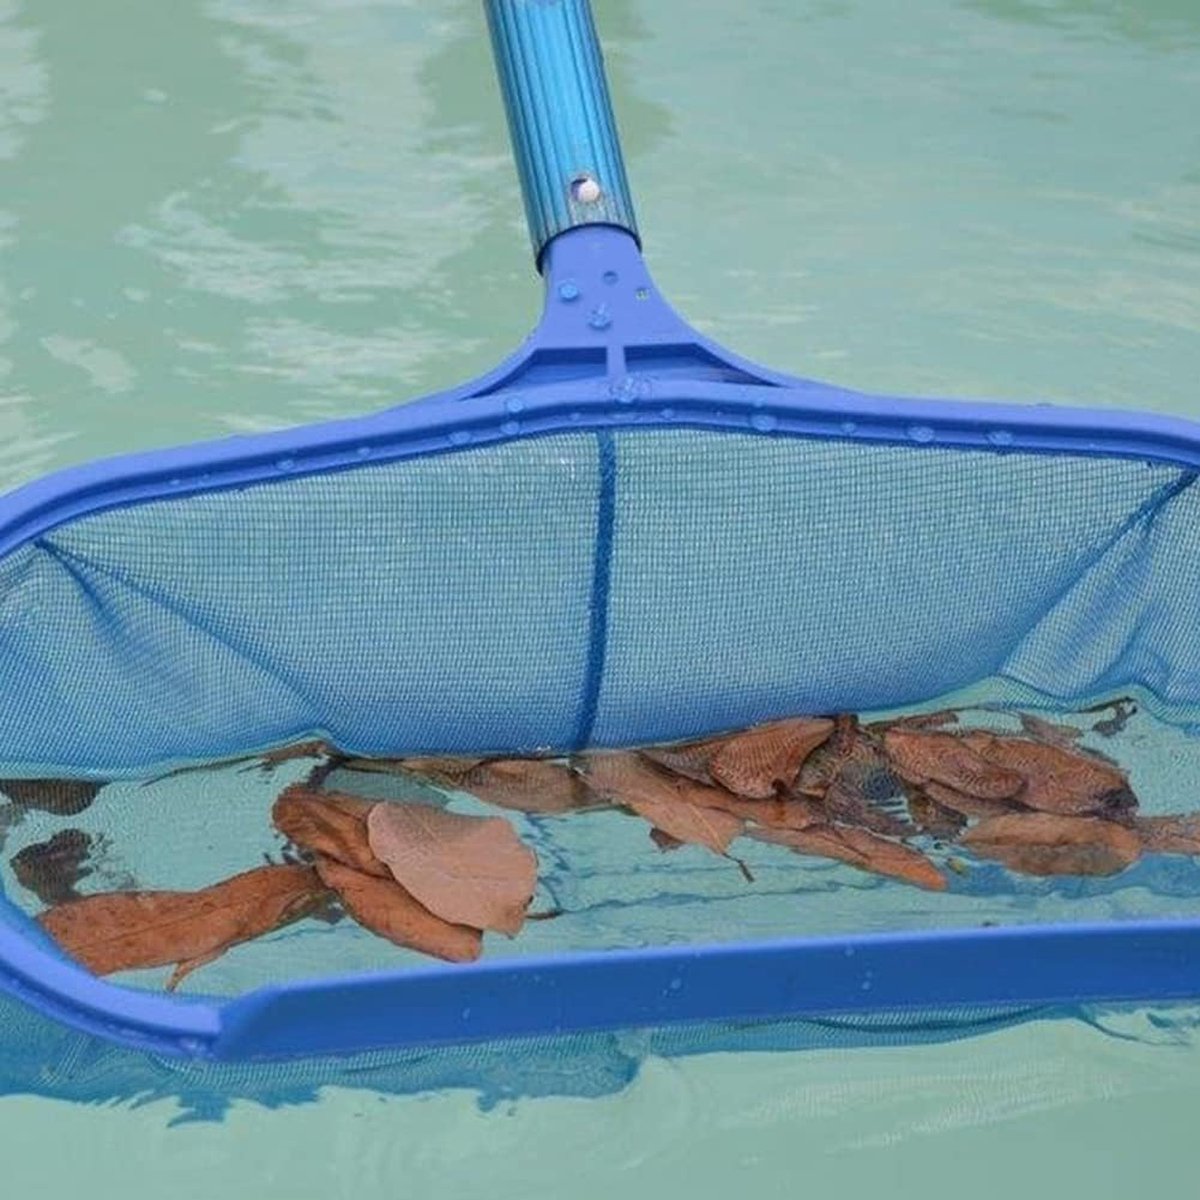 piscine - Filet nettoyage - Longue épuisette avec manche télescopique -  Avec tige télescopique - Pour piscine, bassin jardin, jacuzzi, spa